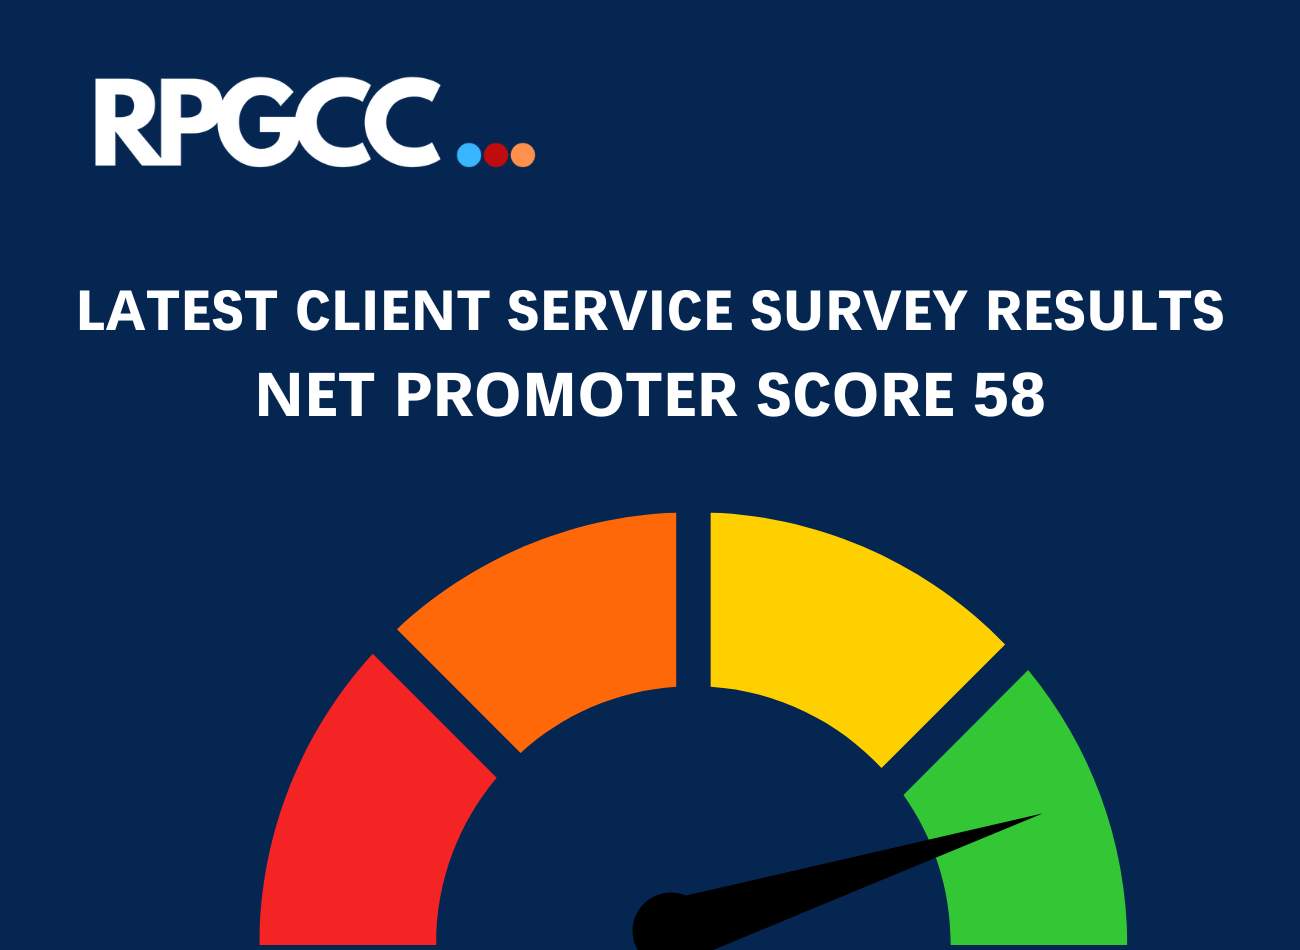 RPGCC net promoter score client survey